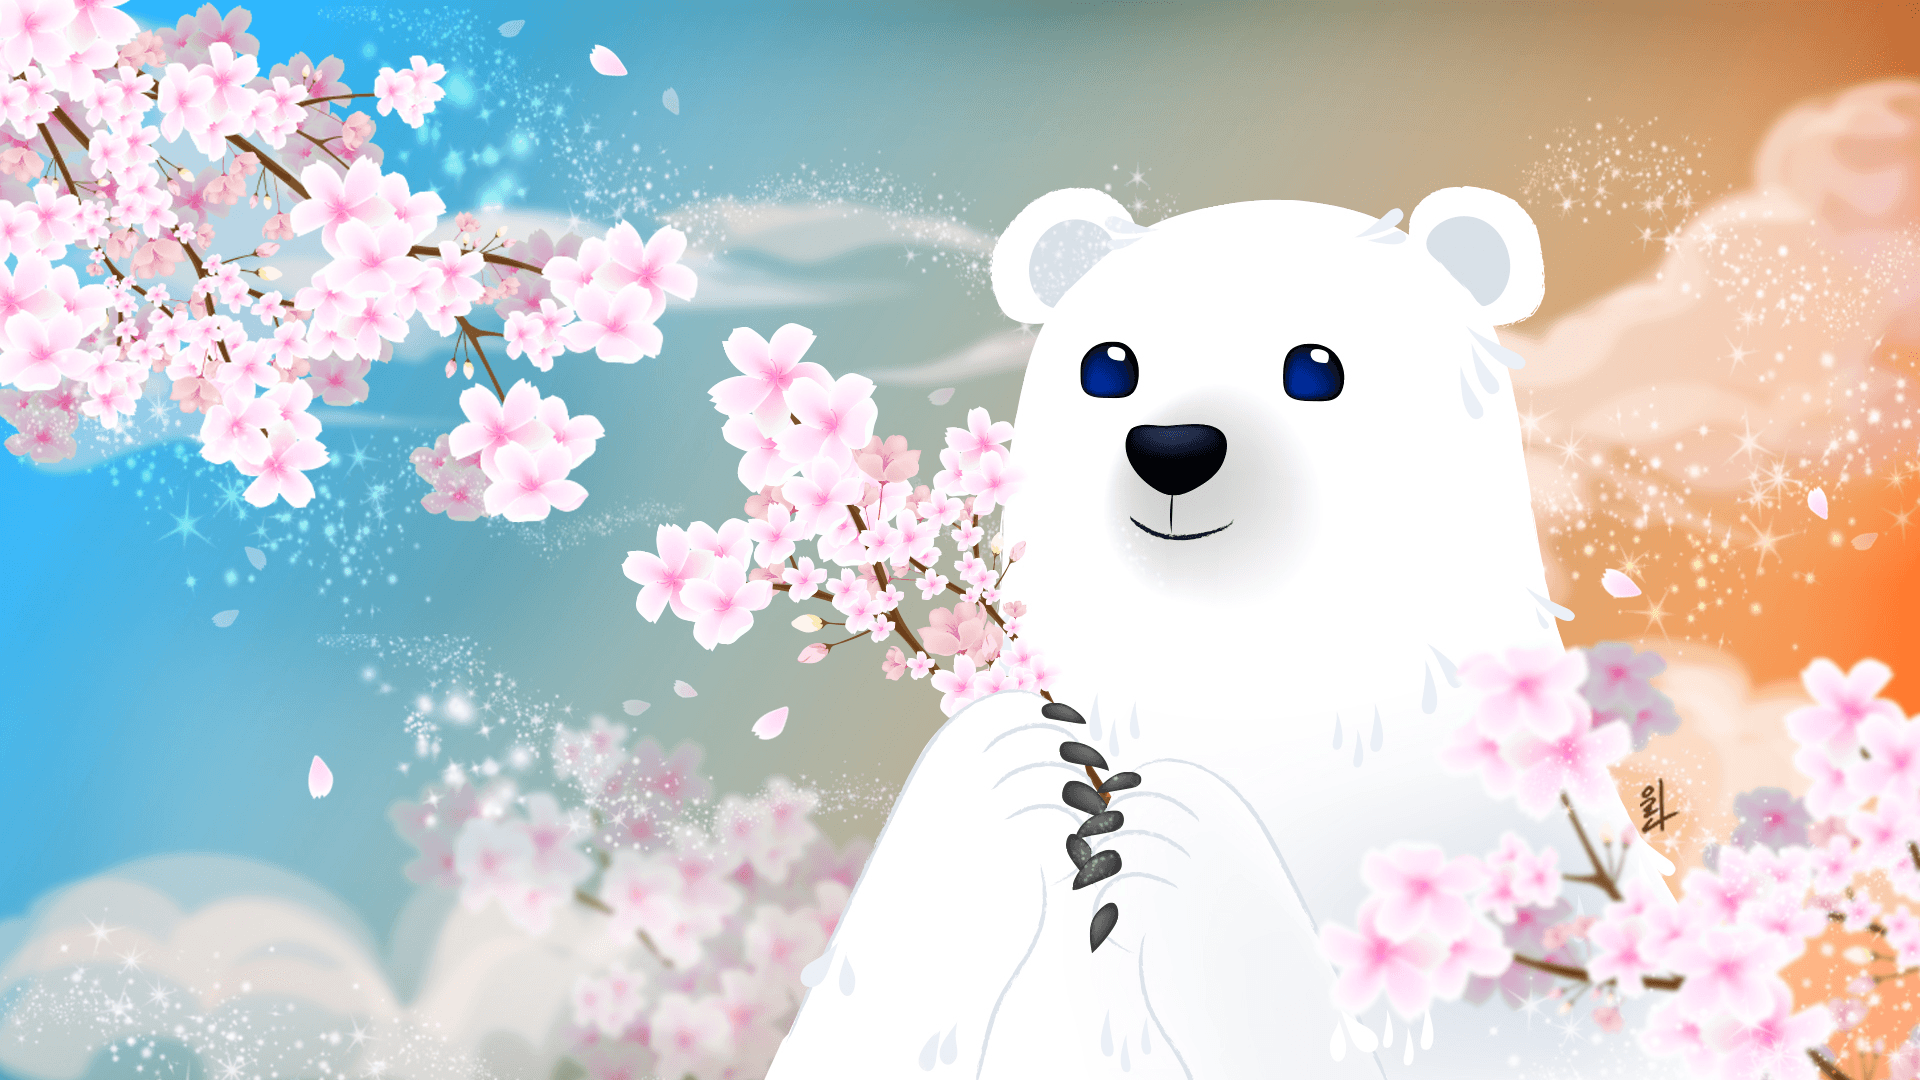  Master Polar Bear - The Spring (마스터폴라베어-봄)